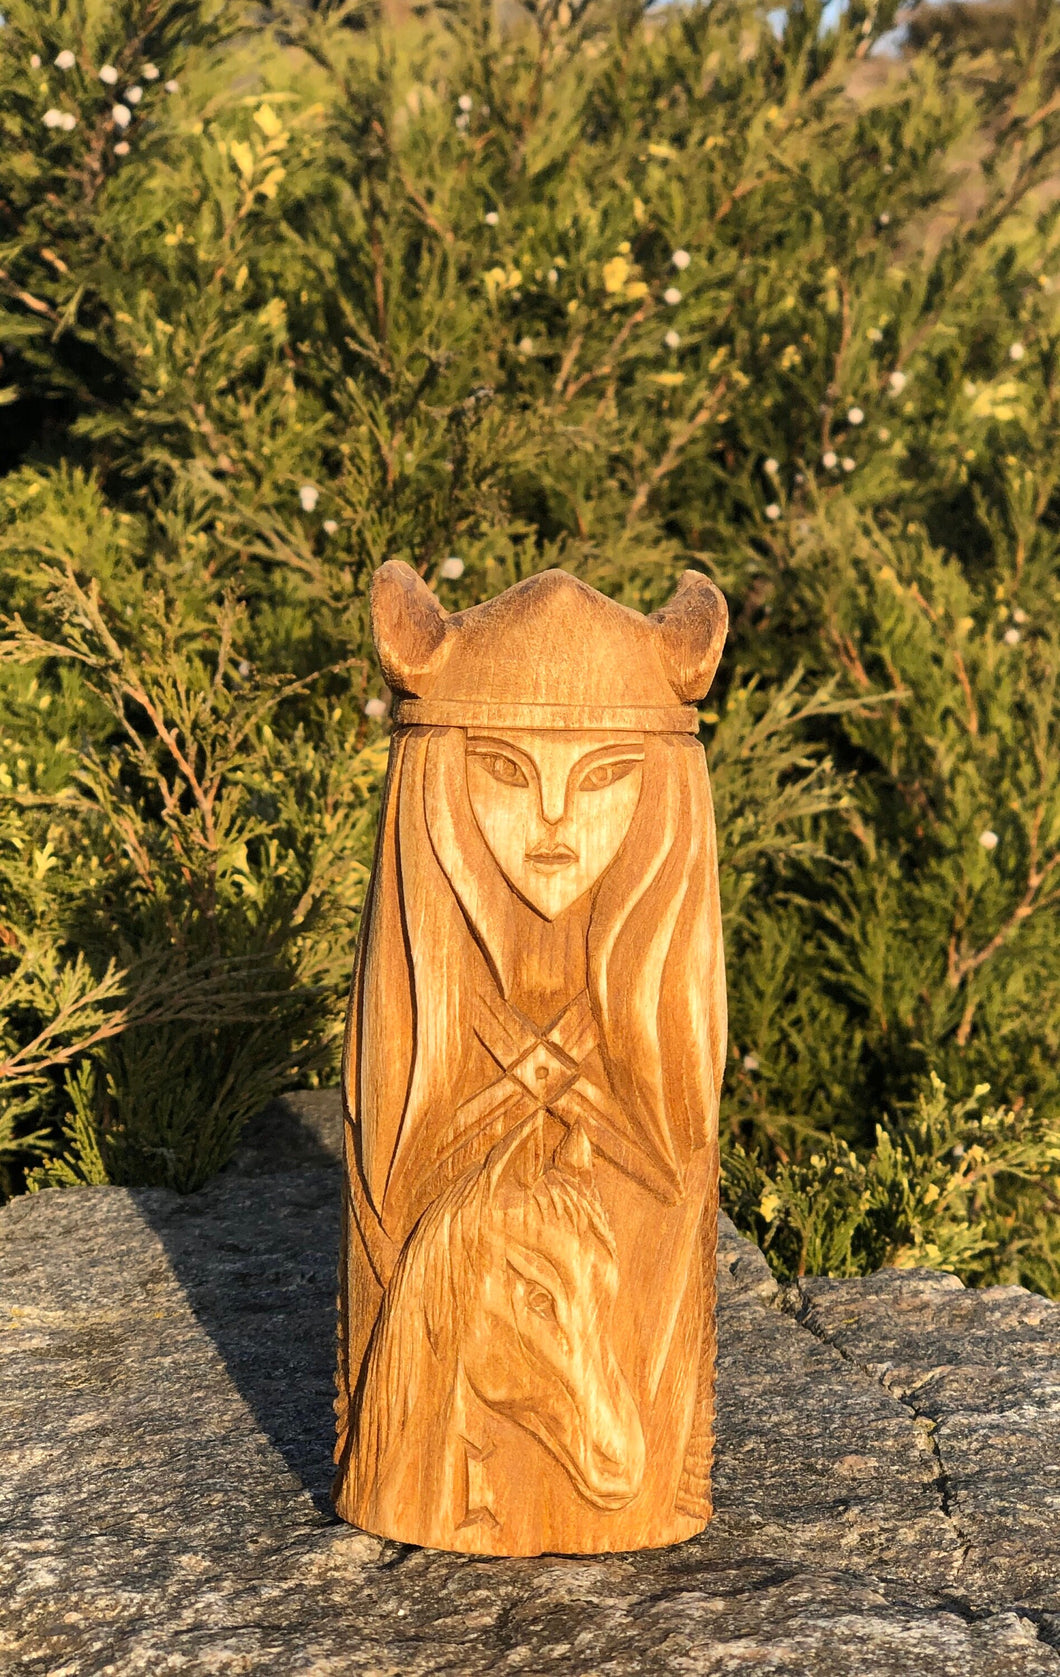 Gna Norse Goddess statue